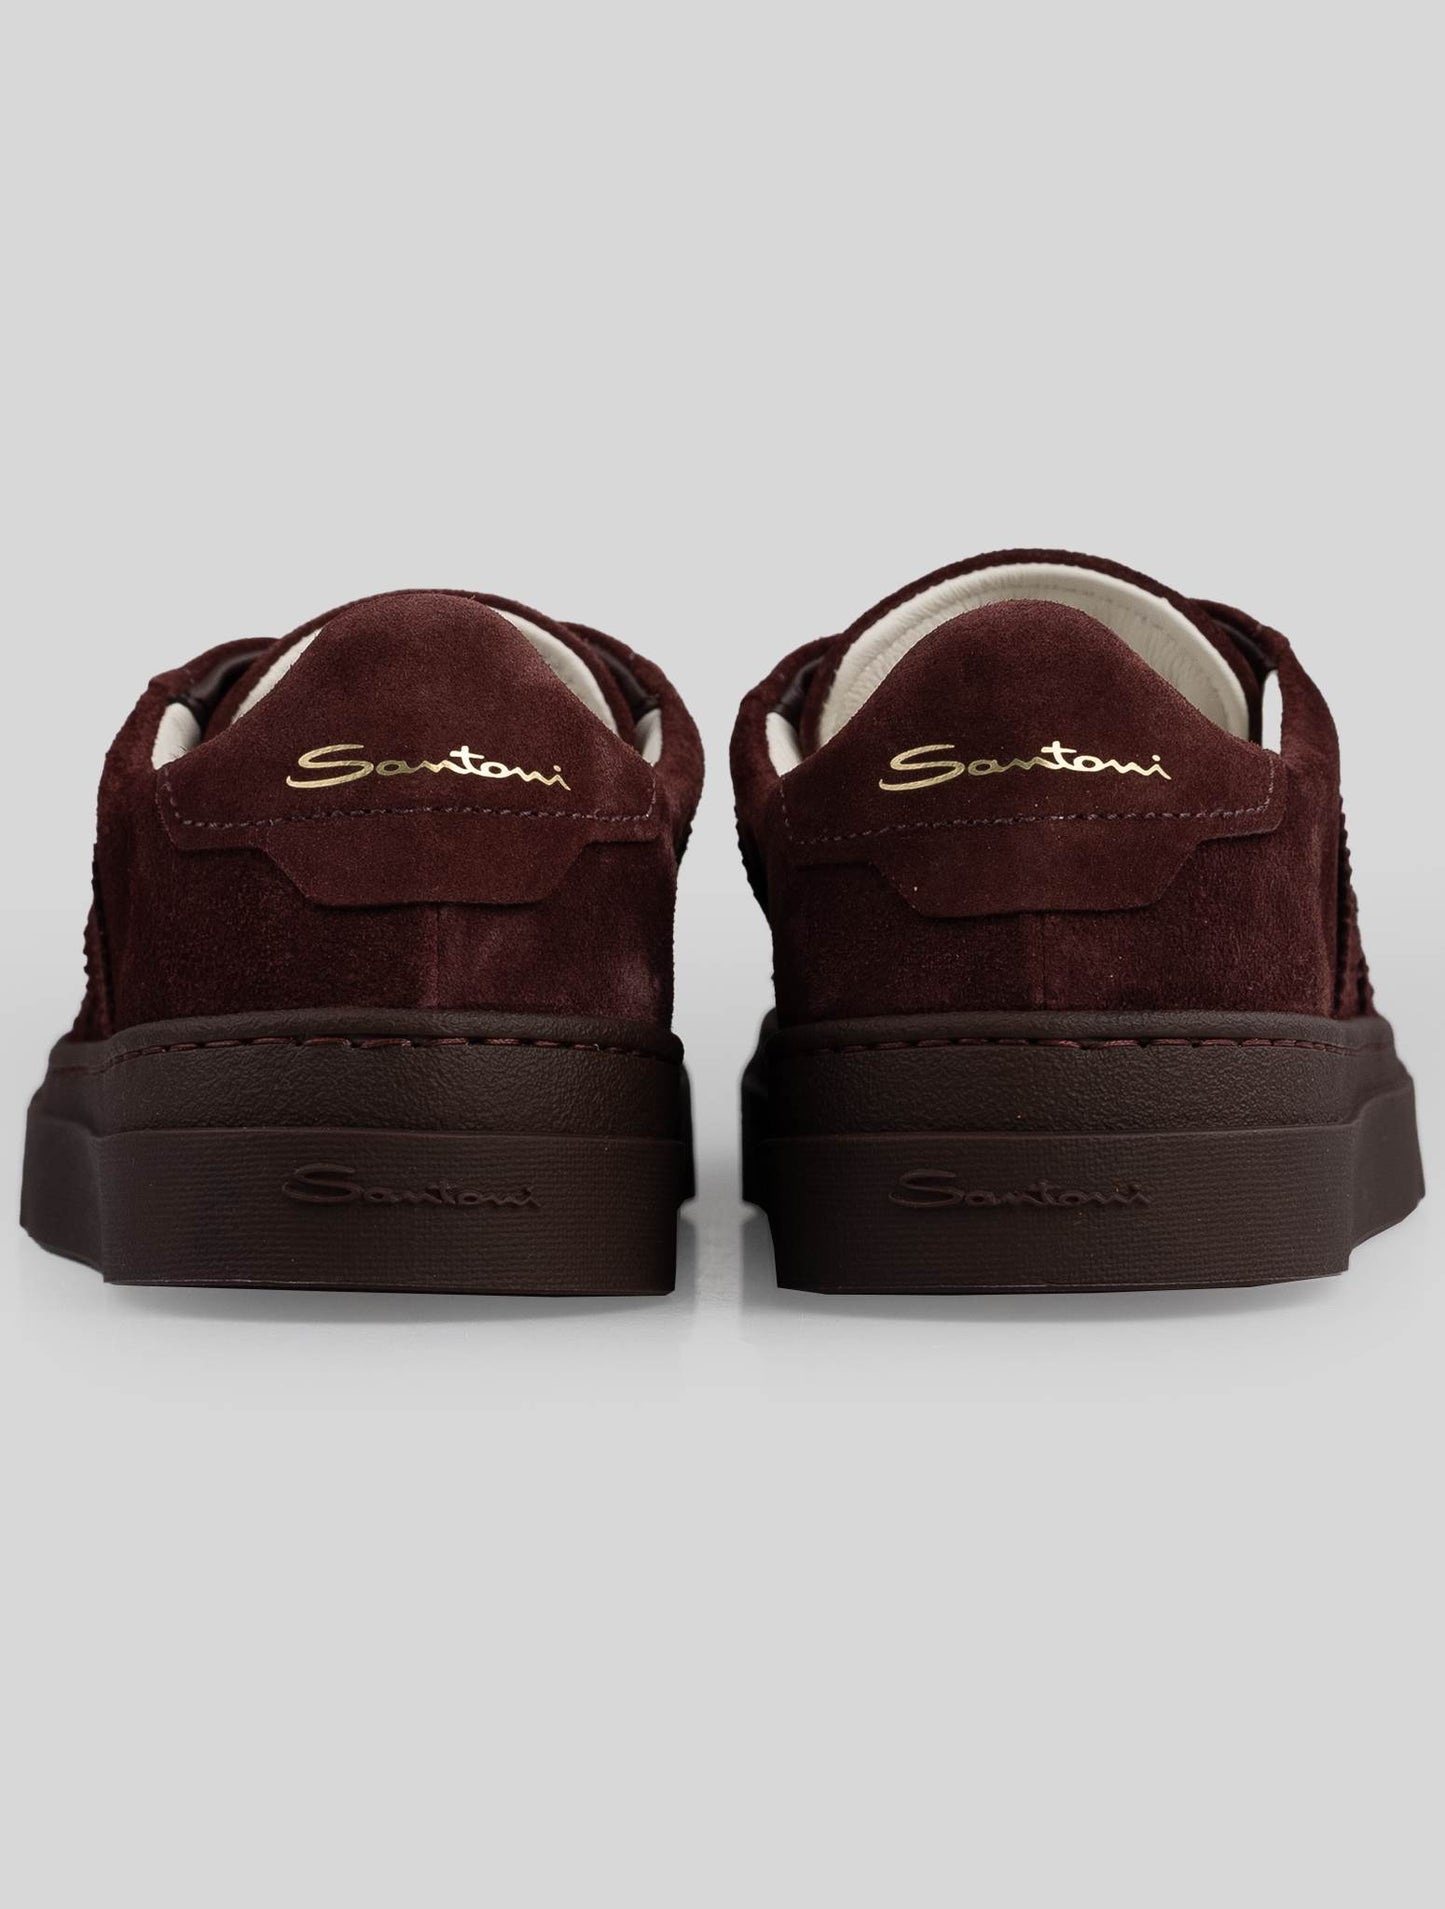 Santoni Burgundy Läder Suede Sneakers